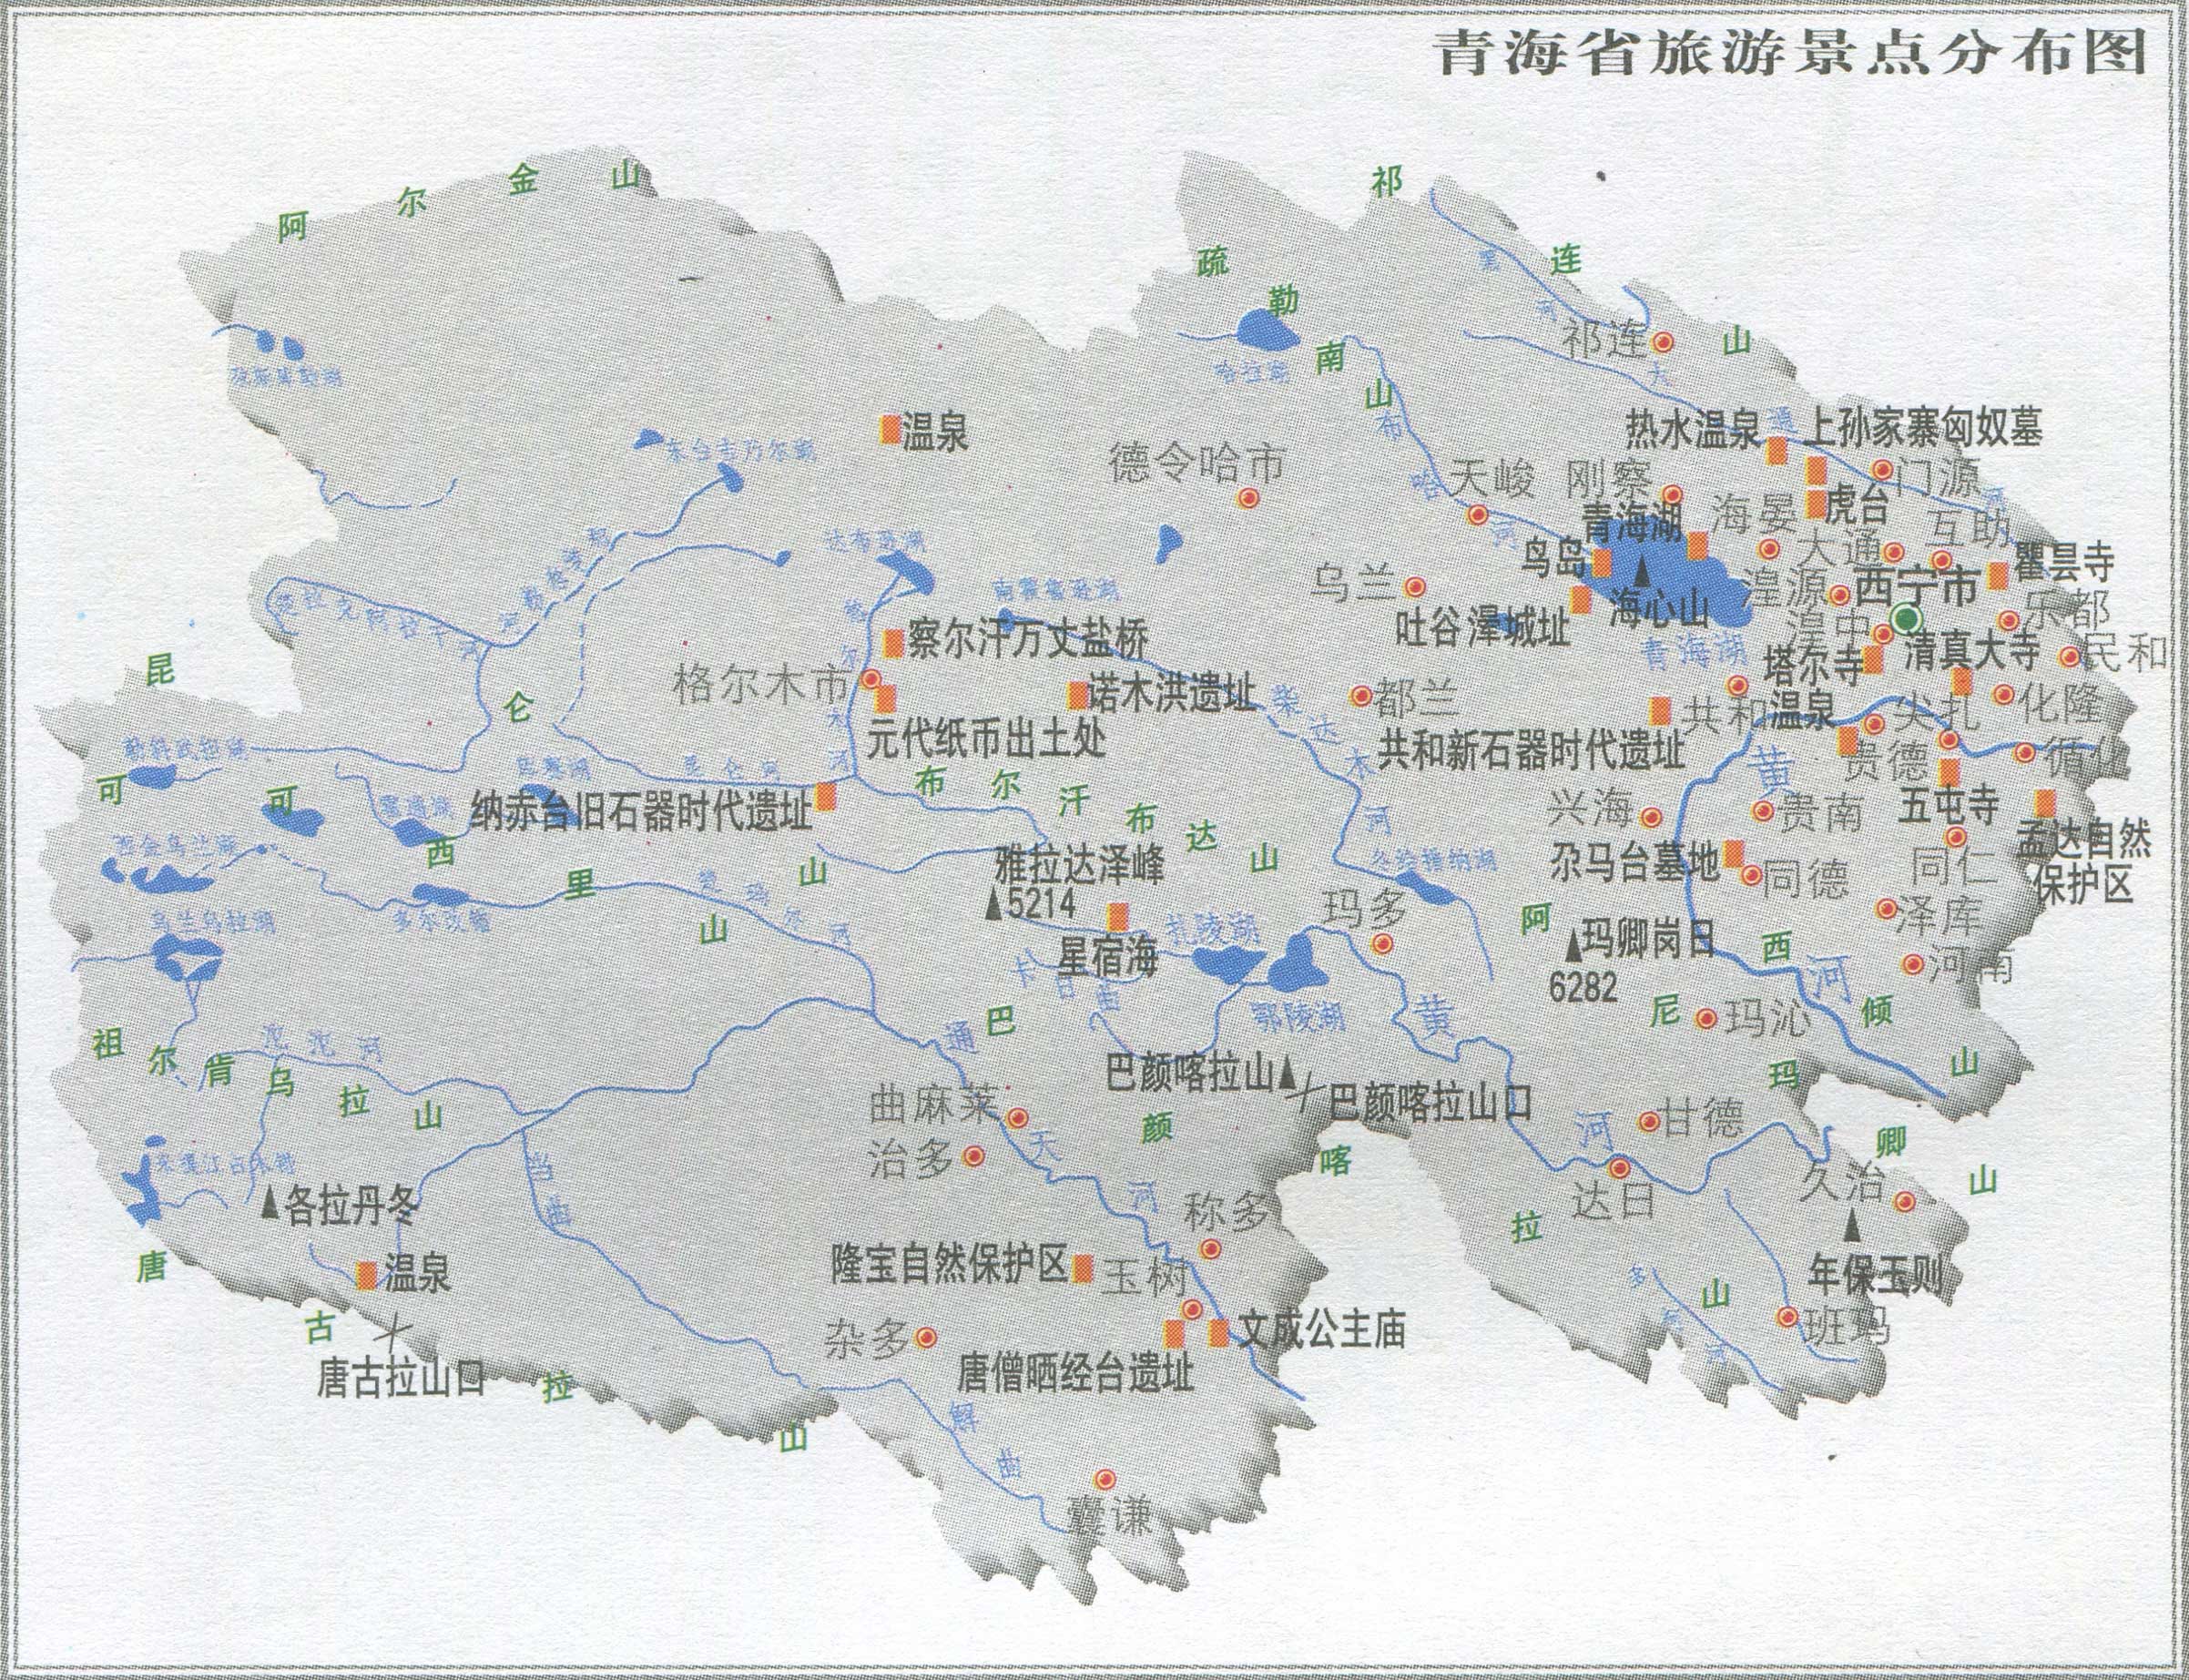 青海旅游景点分布图_景点分布图地图库_地图窝